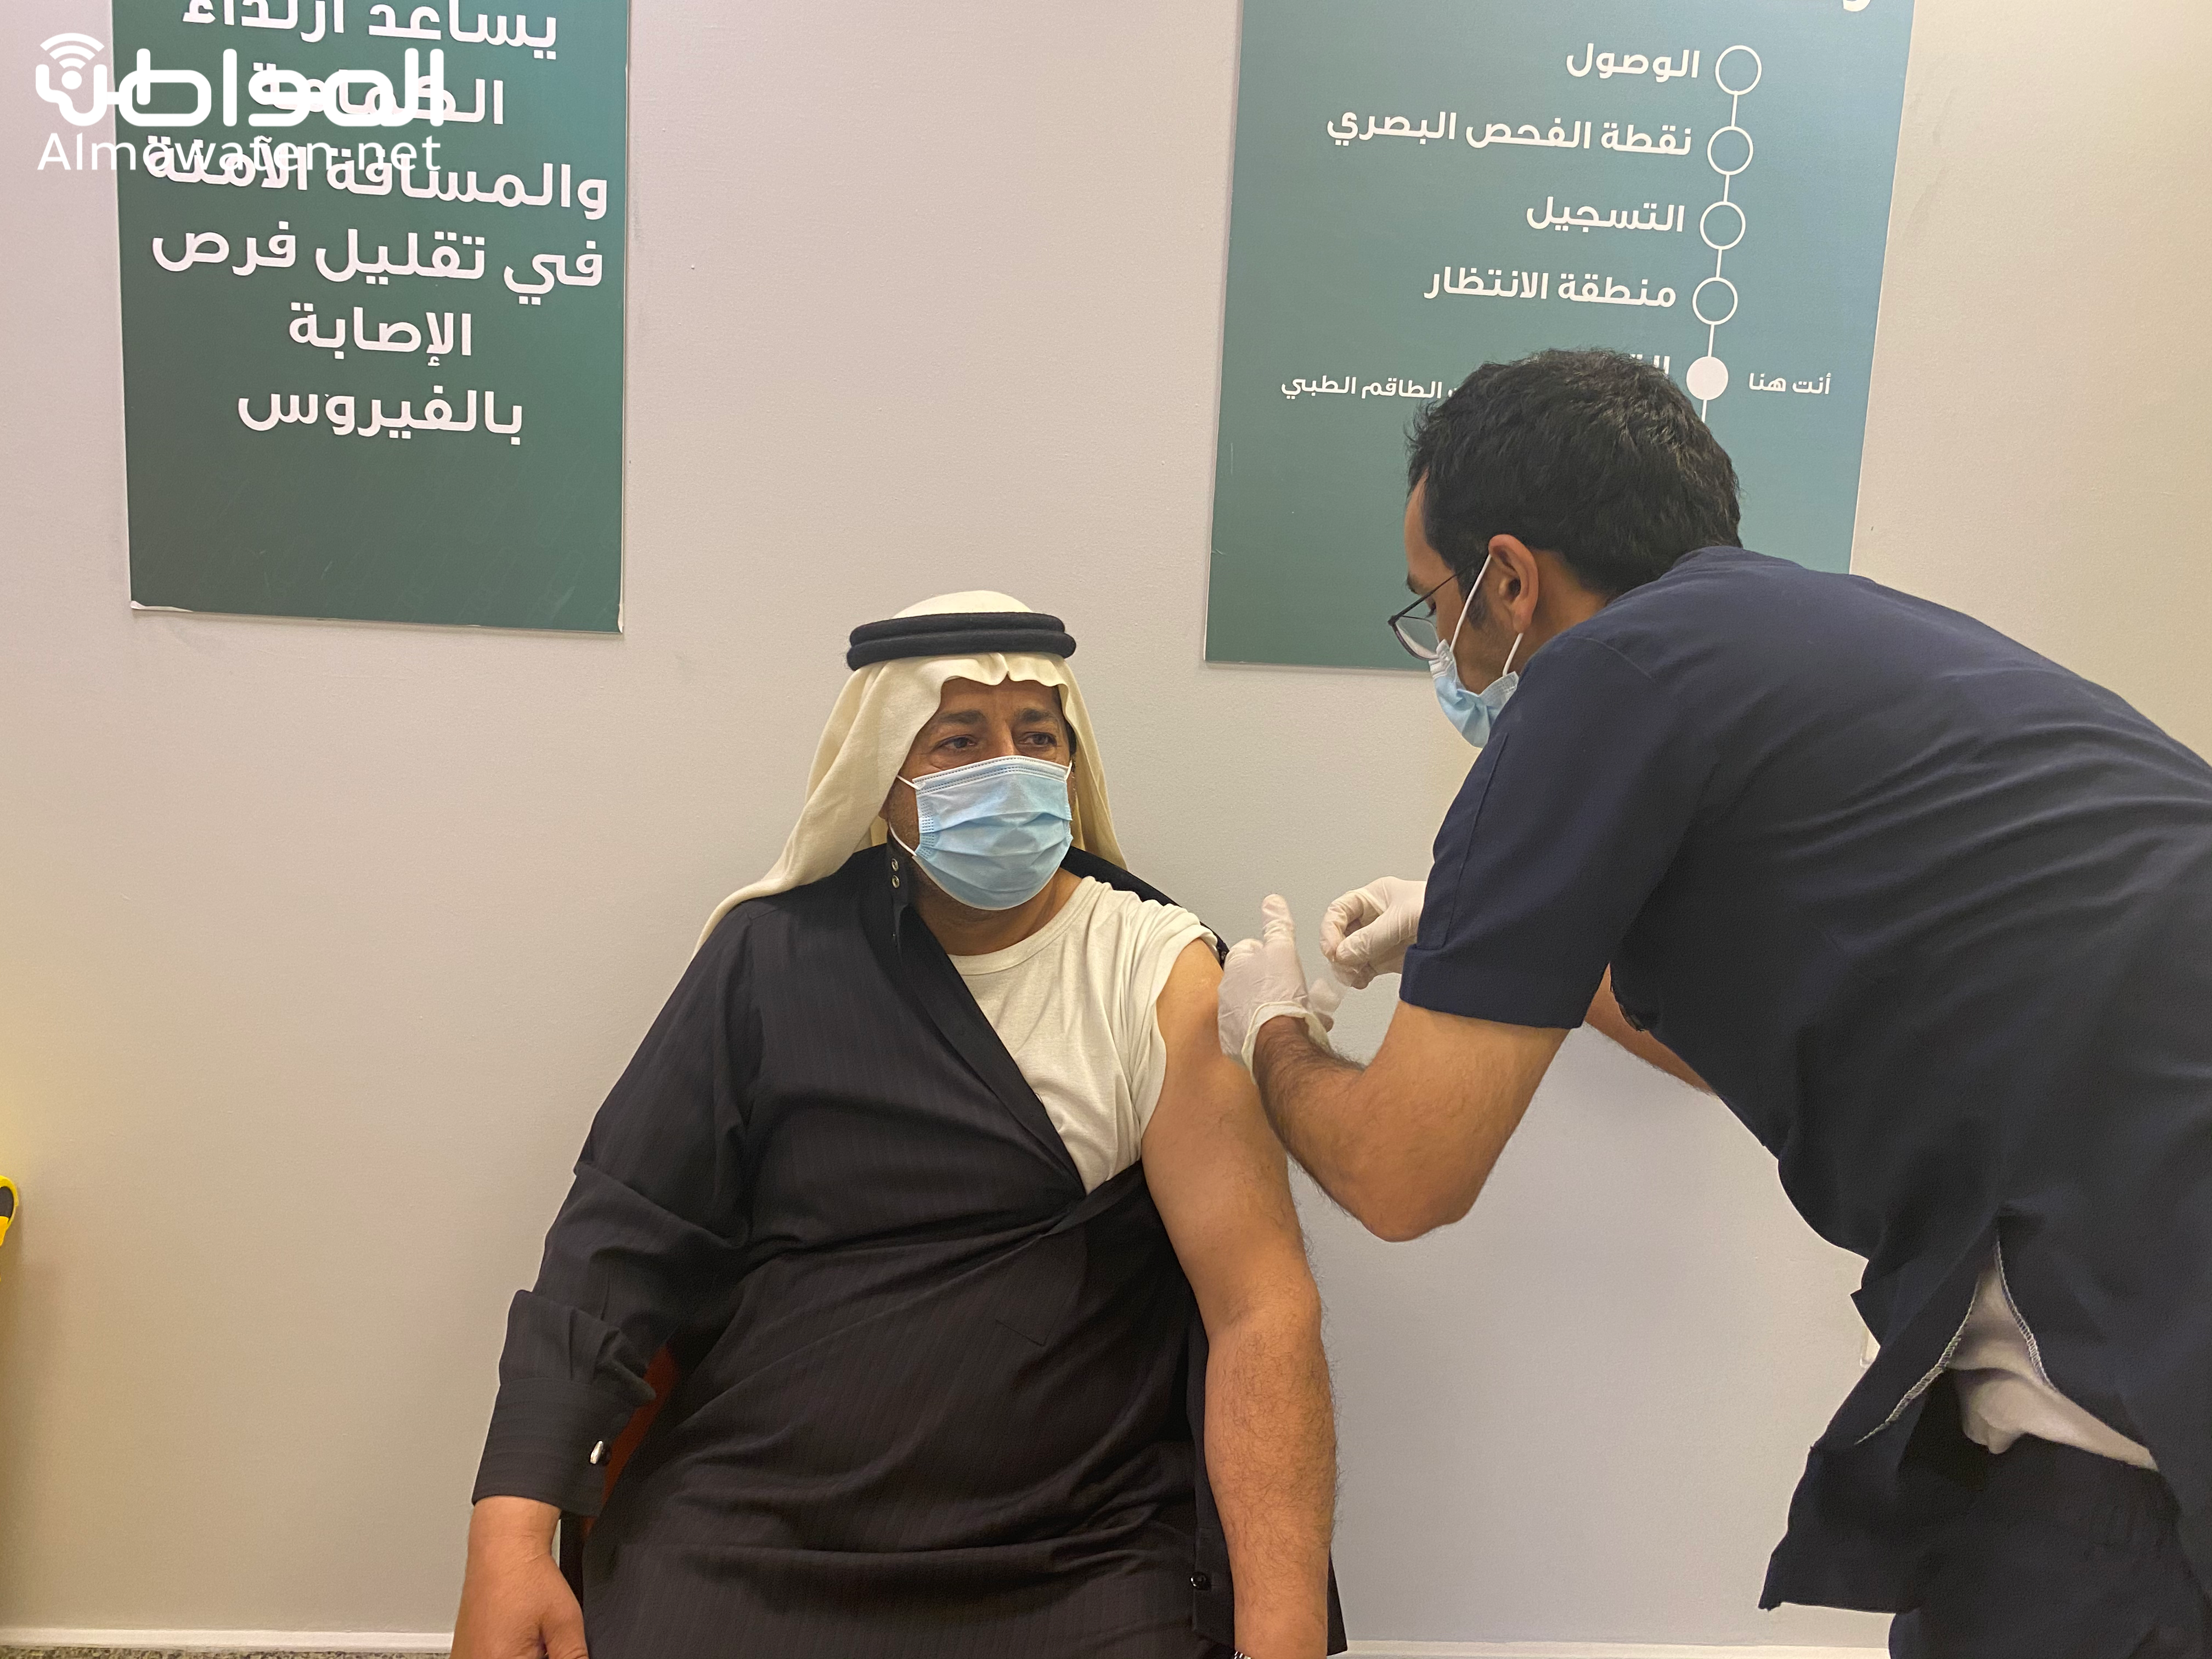 تطعيم أكثر من مليوني مستفيد بلقاح كورونا في السعودية